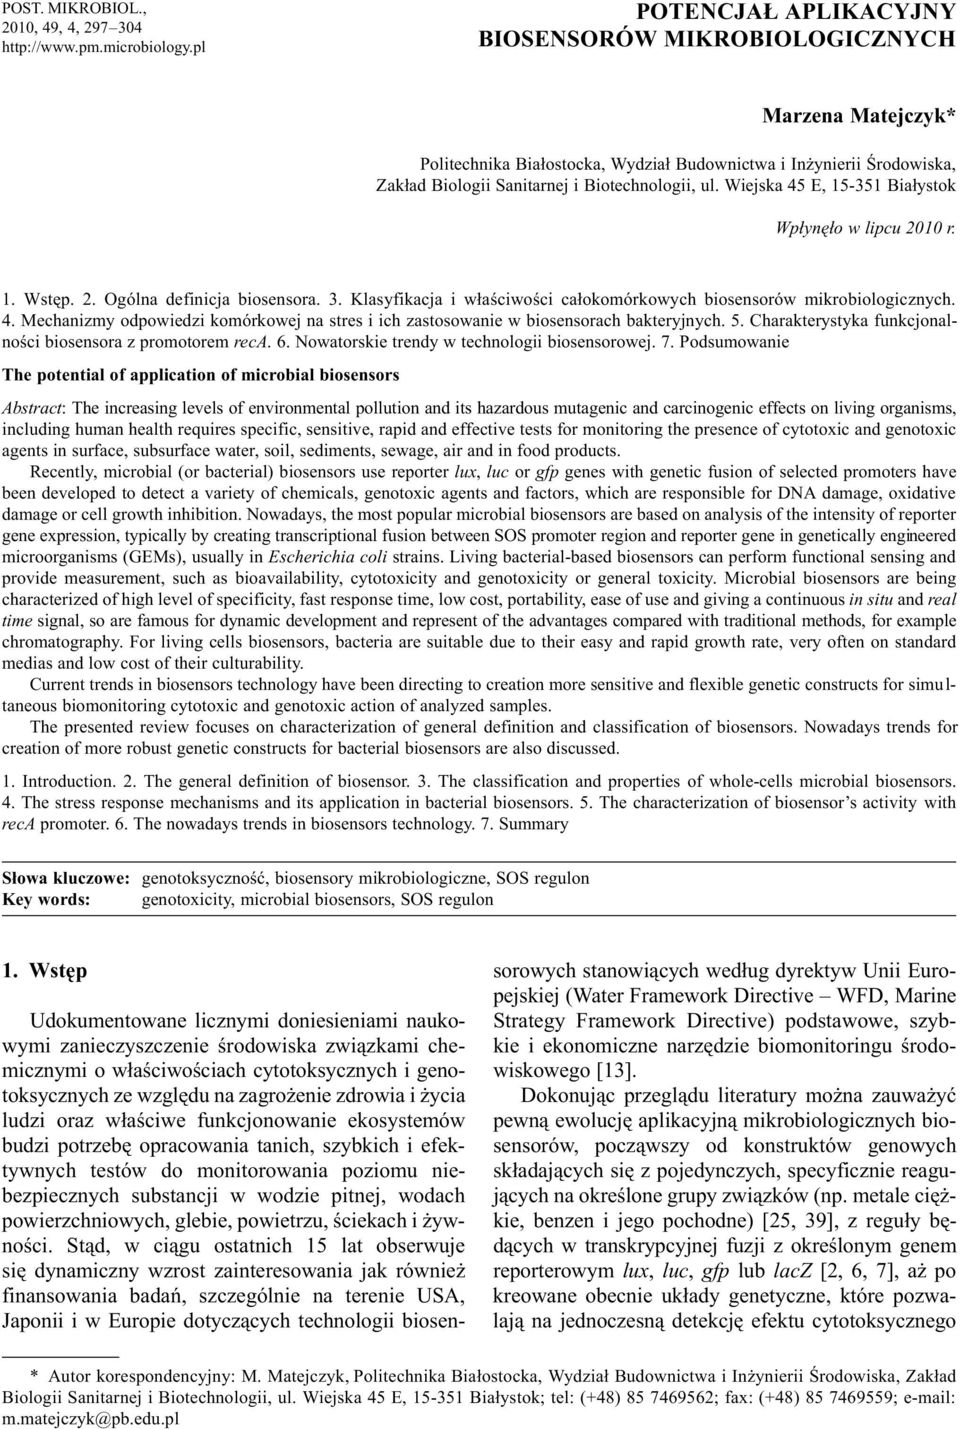 Wiejska 45 E, 15-351 Bia³ystok Wp³ynê³o w lipcu 2010 r. 1. Wstêp. 2. Ogólna definicja biosensora. 3. Klasyfikacja i w³aœciwoœci ca³okomórkowych biosensorów mikrobiologicznych. 4. Mechanizmy odpowiedzi komórkowej na stres i ich zastosowanie w biosensorach bakteryjnych.